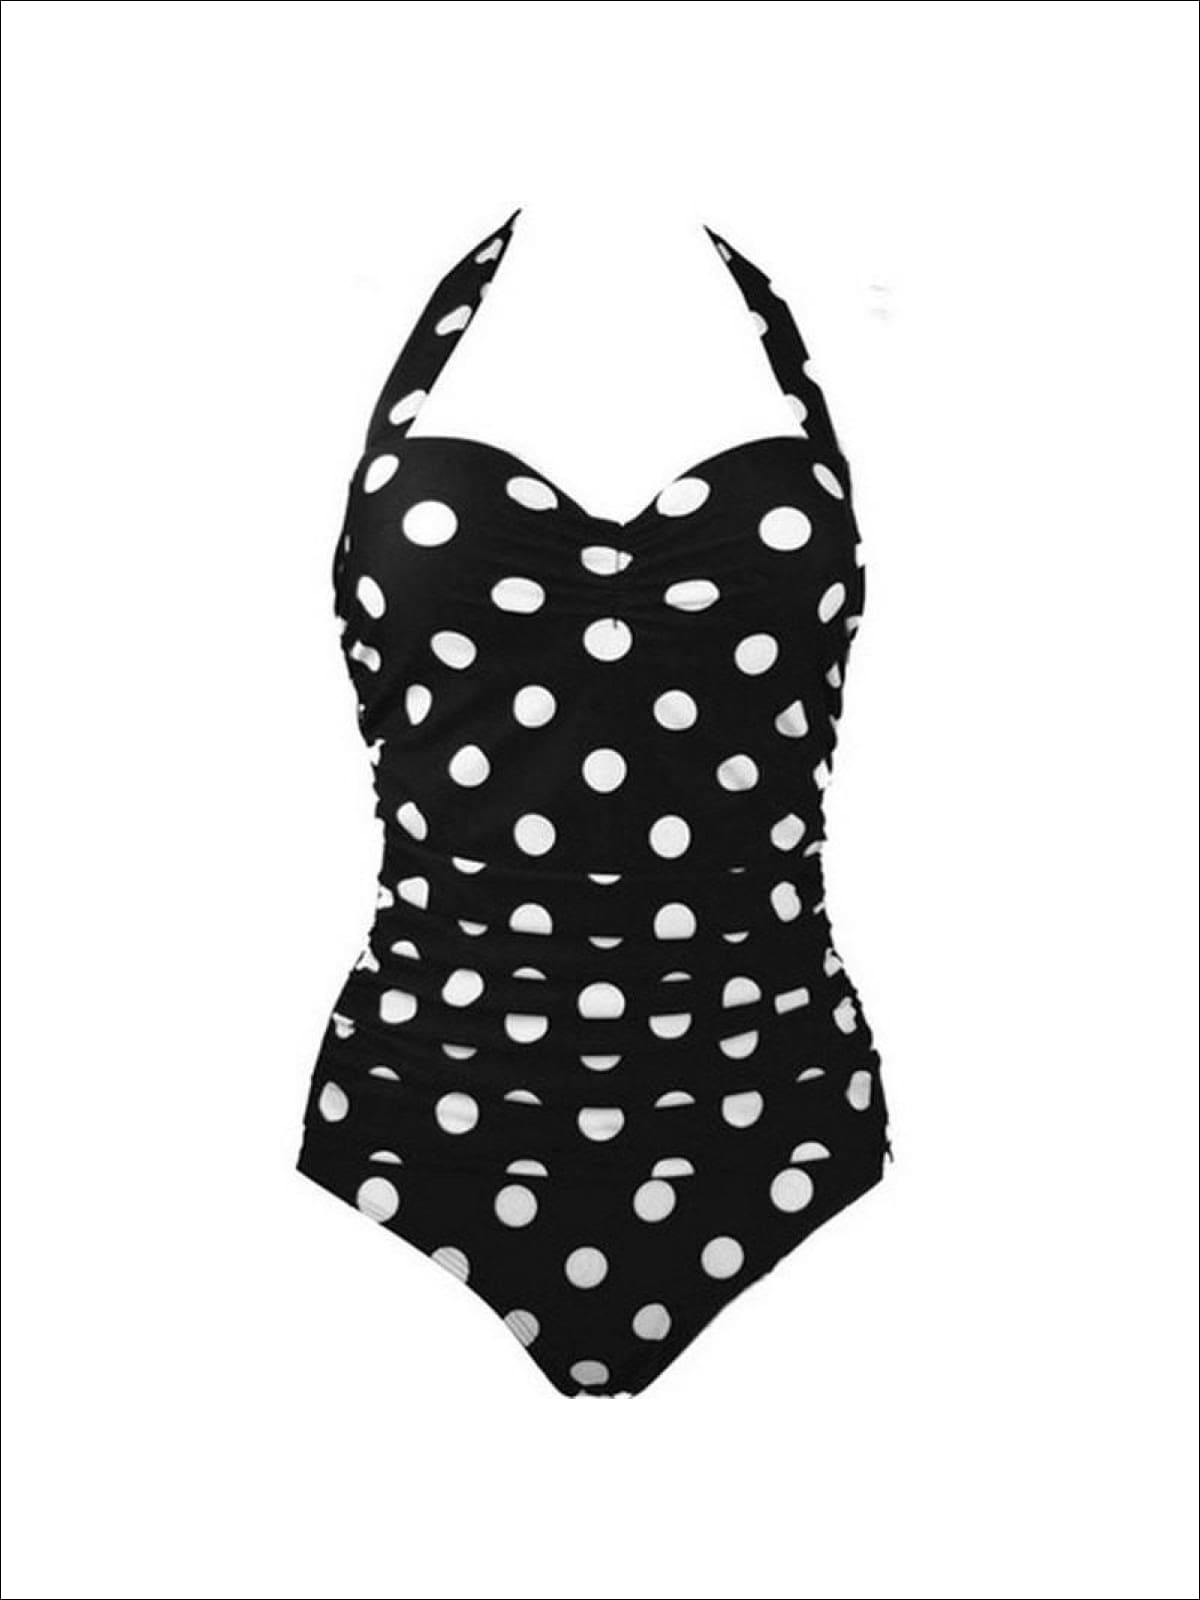 Unique Vintage & Smak Parlour Black/White Polka Dot Halter Swim Top